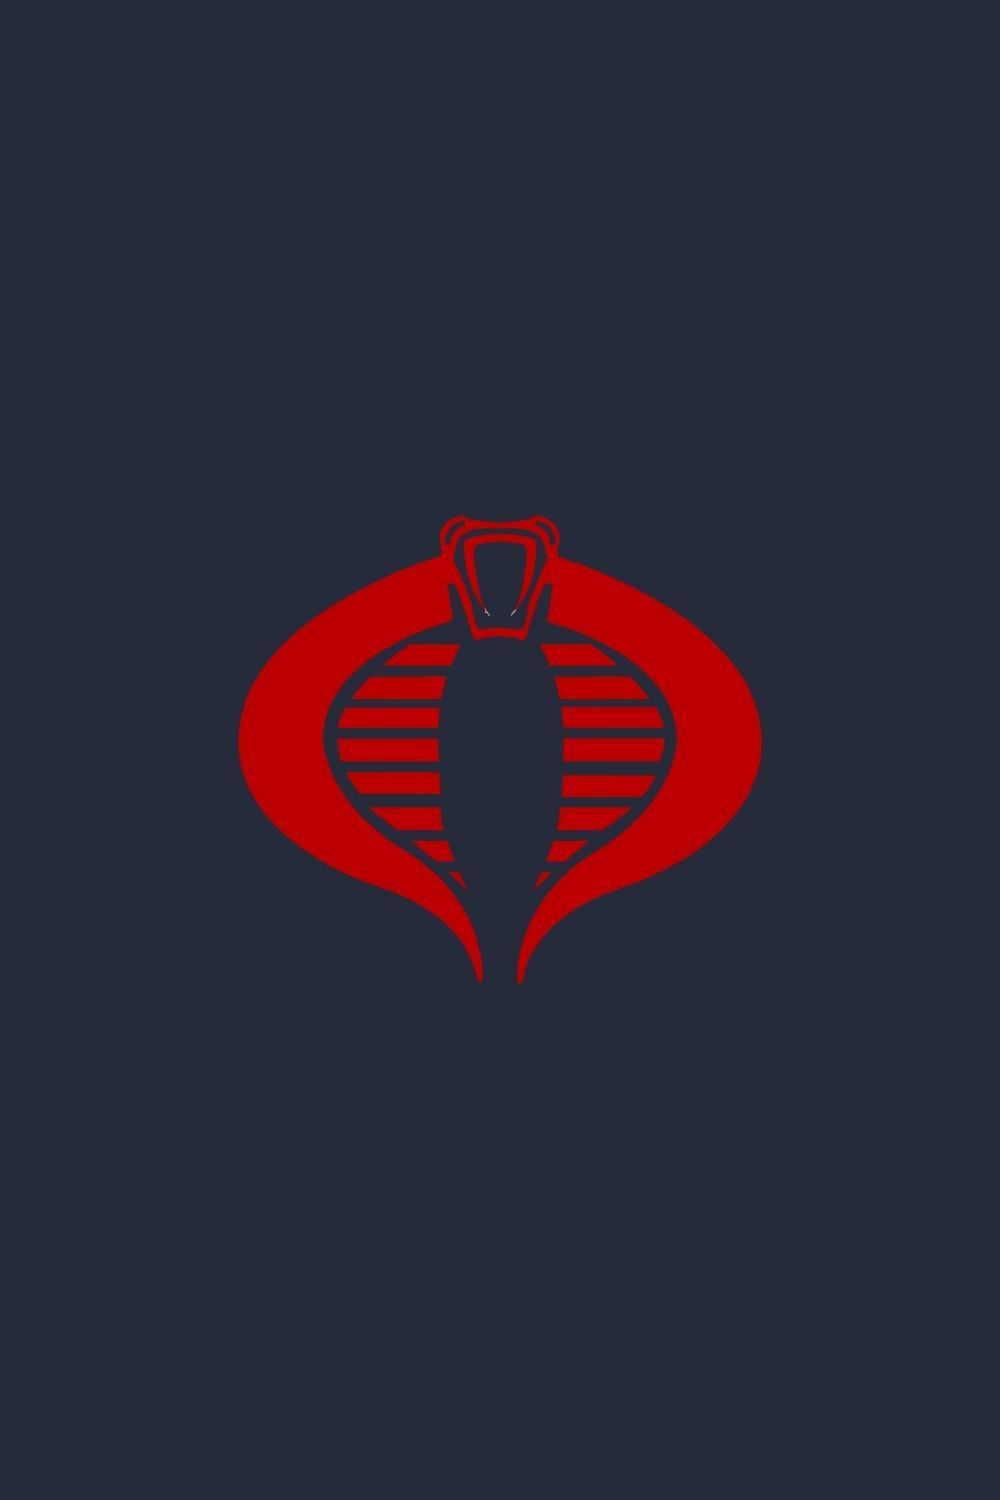 Gi Joe Cobra Enemy Logo In Art